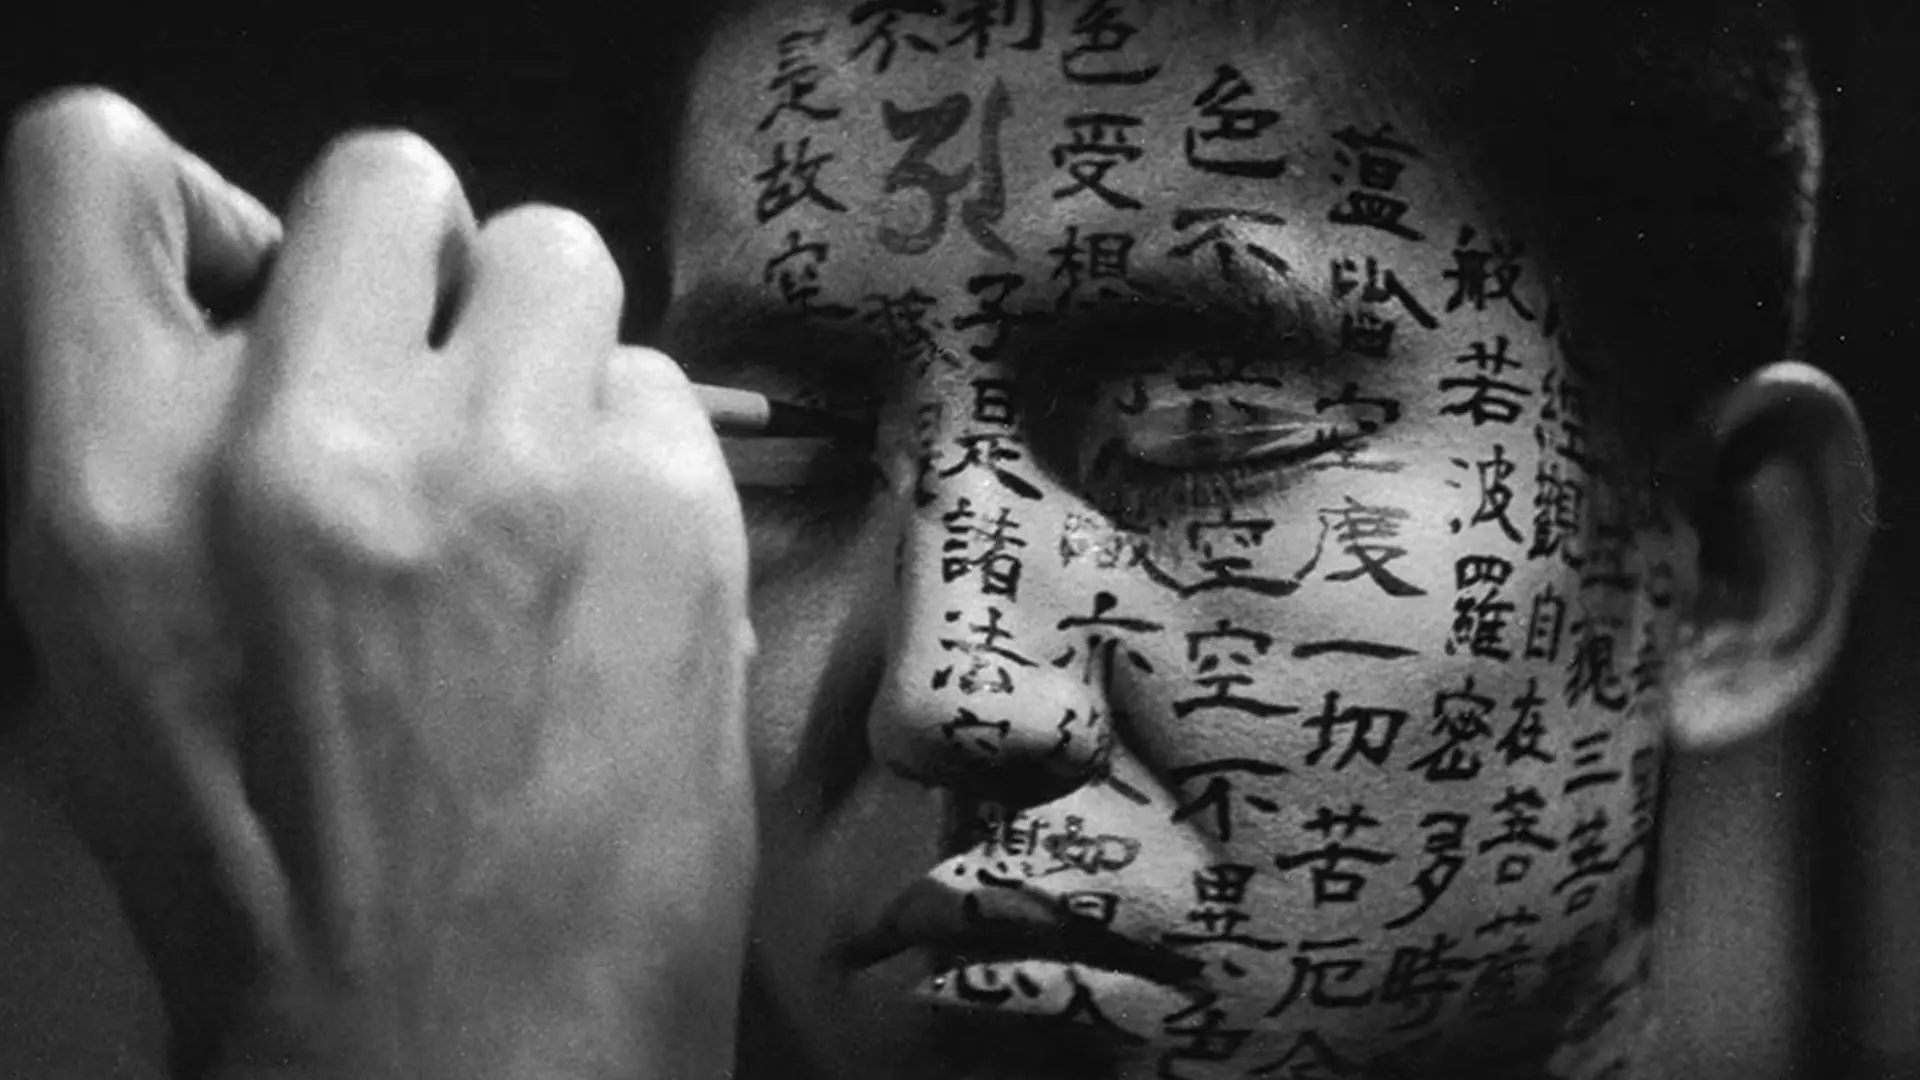 سامورایی در حال نوشتن روی صورت در فیلم کوایدان